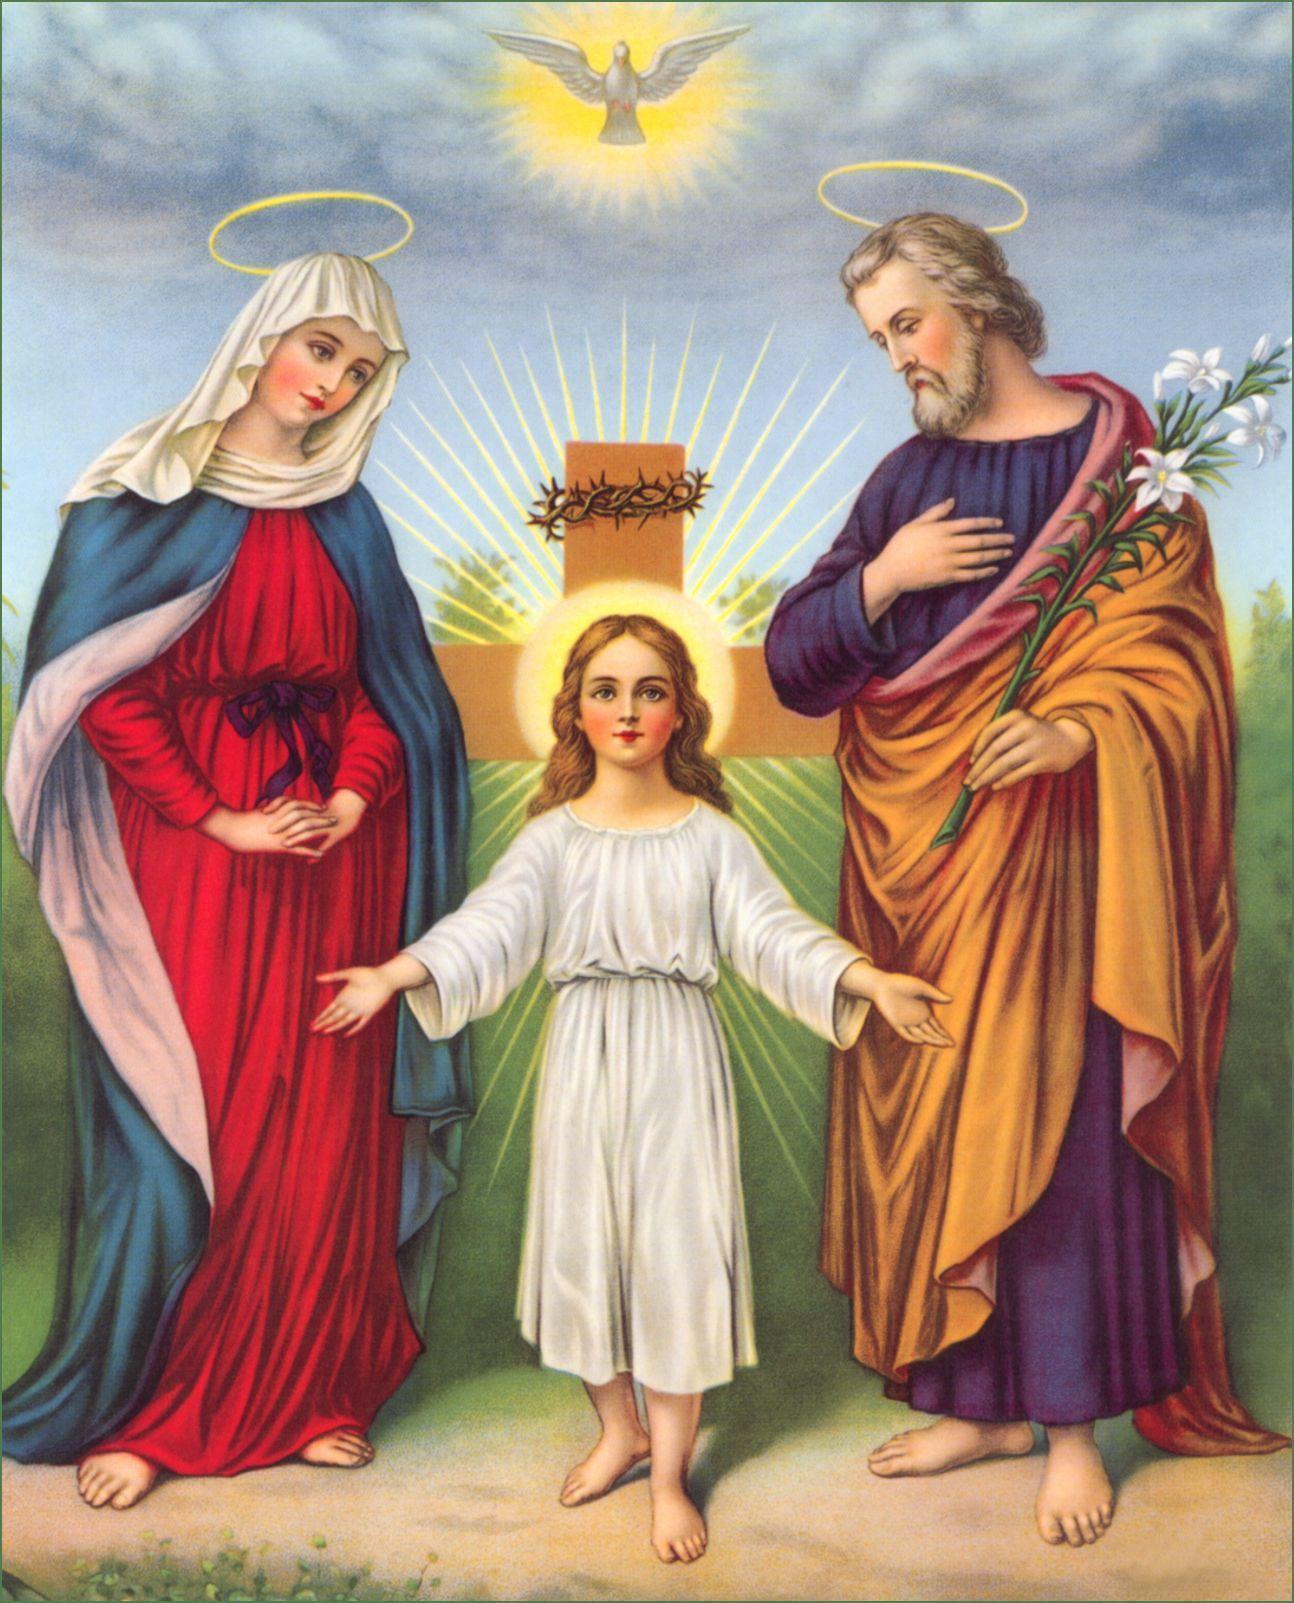 Holy Family Wallpaper